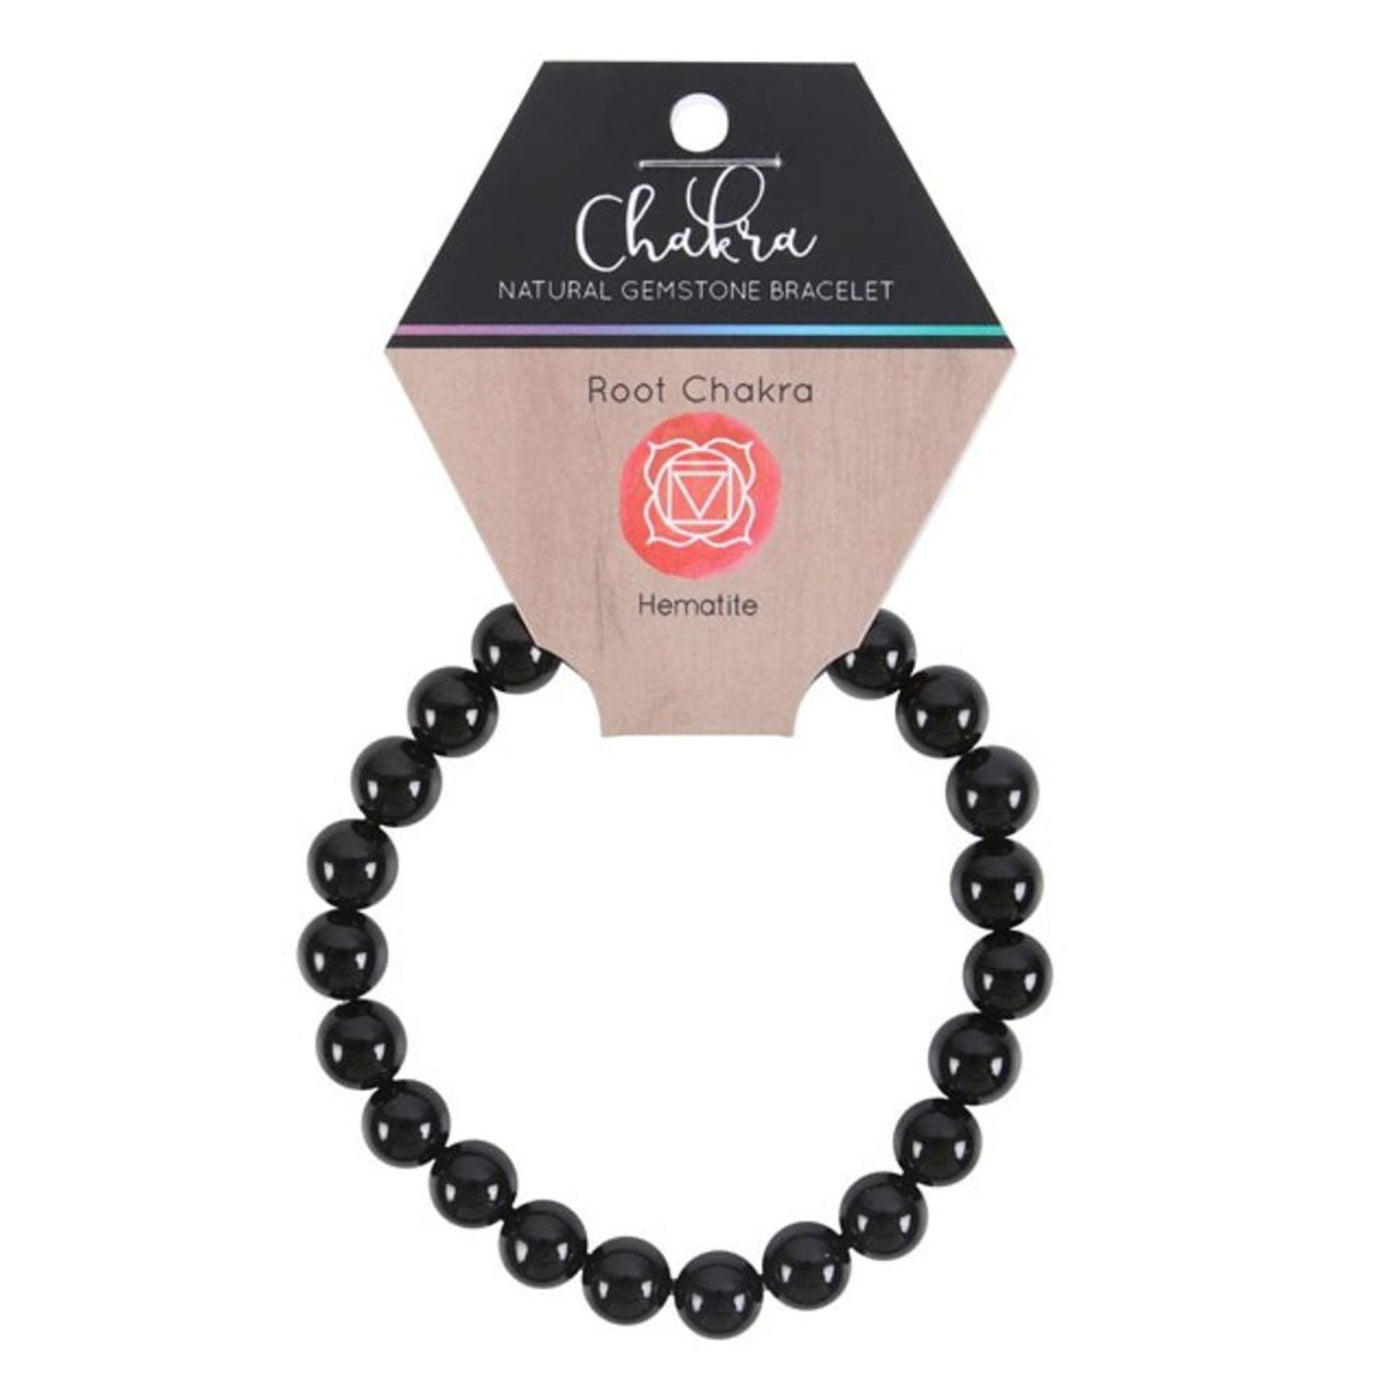 Root Chakra Hematite Gemstone Healing Bracelet.